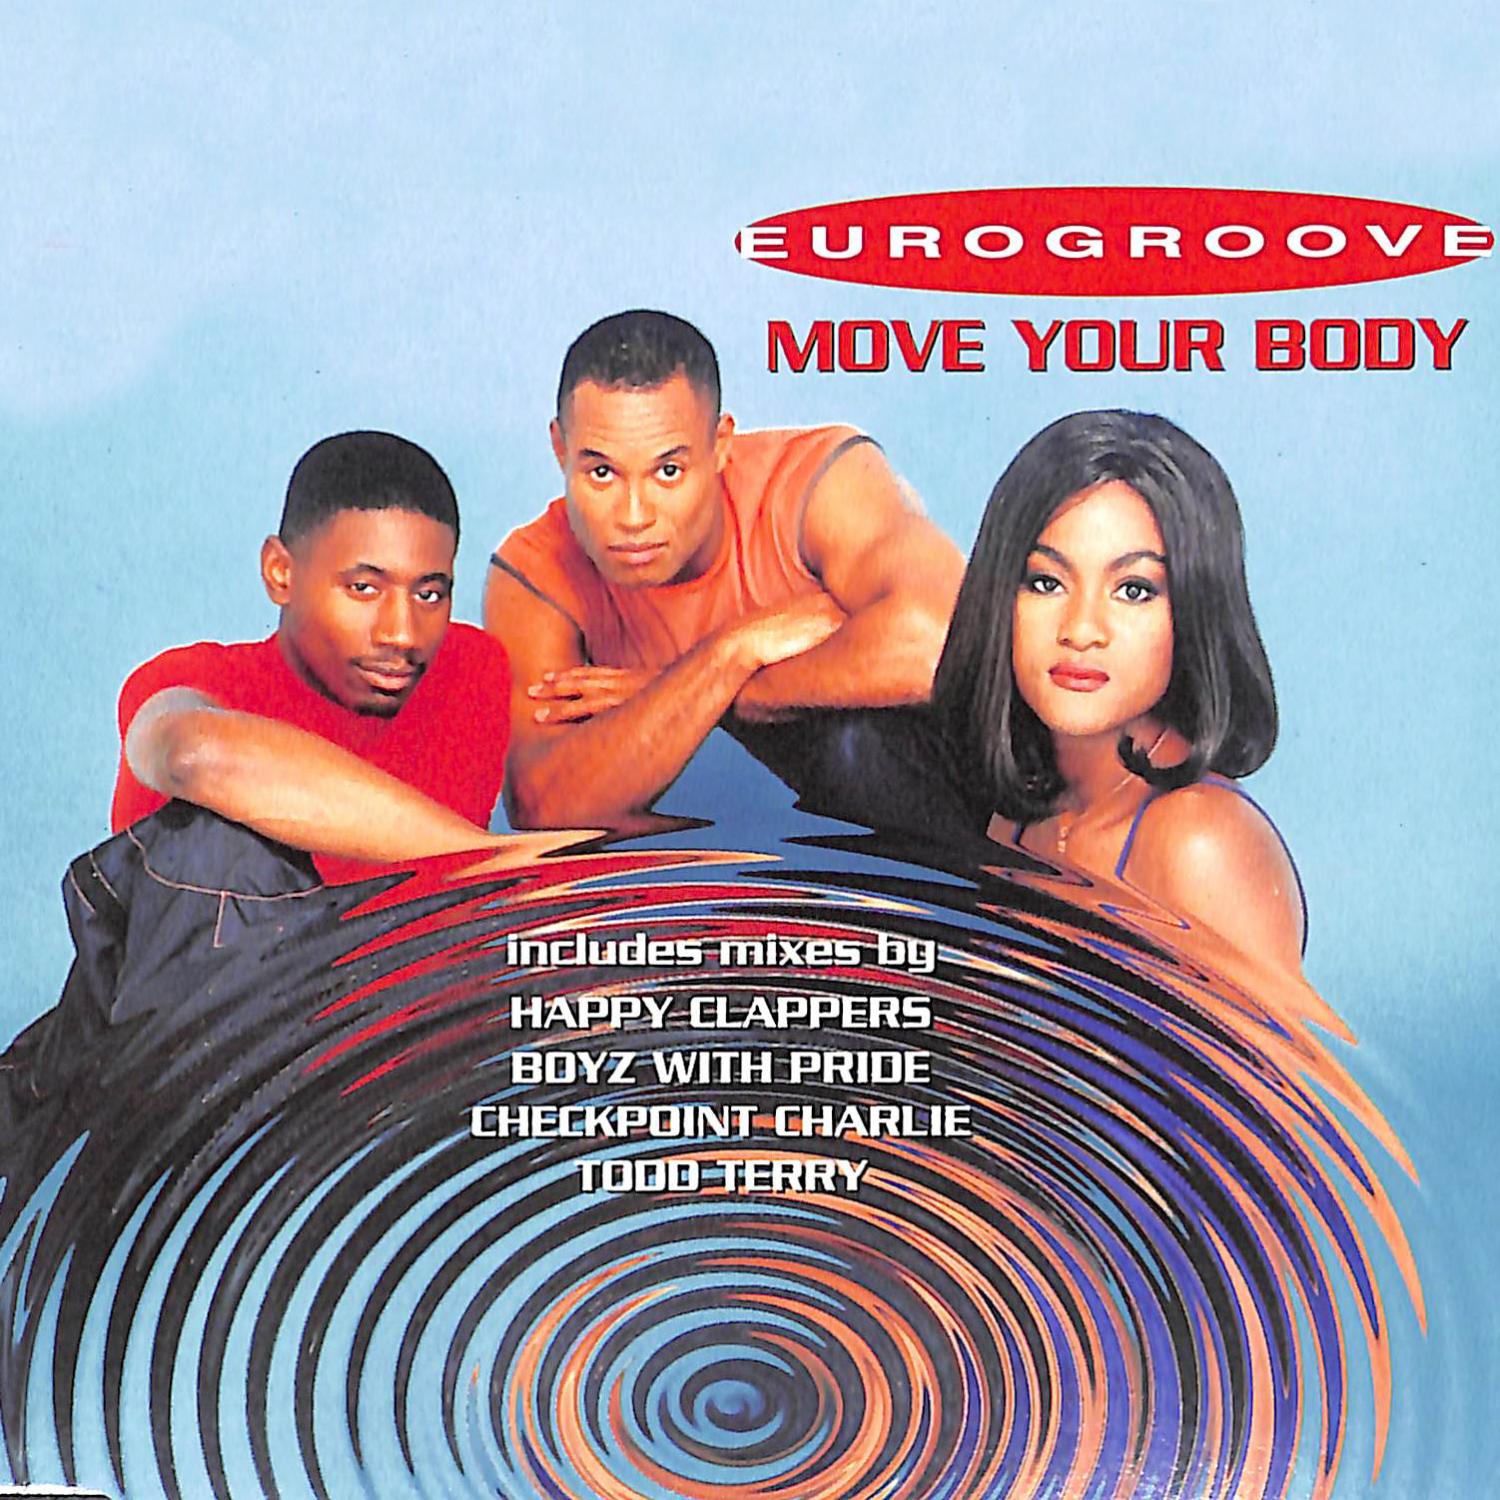 Песня мув е бади. Группа Eurogroove. Eurogroove move your body. Alu Eurogroove. Eurogroove - move your body 1995 (extandamix).